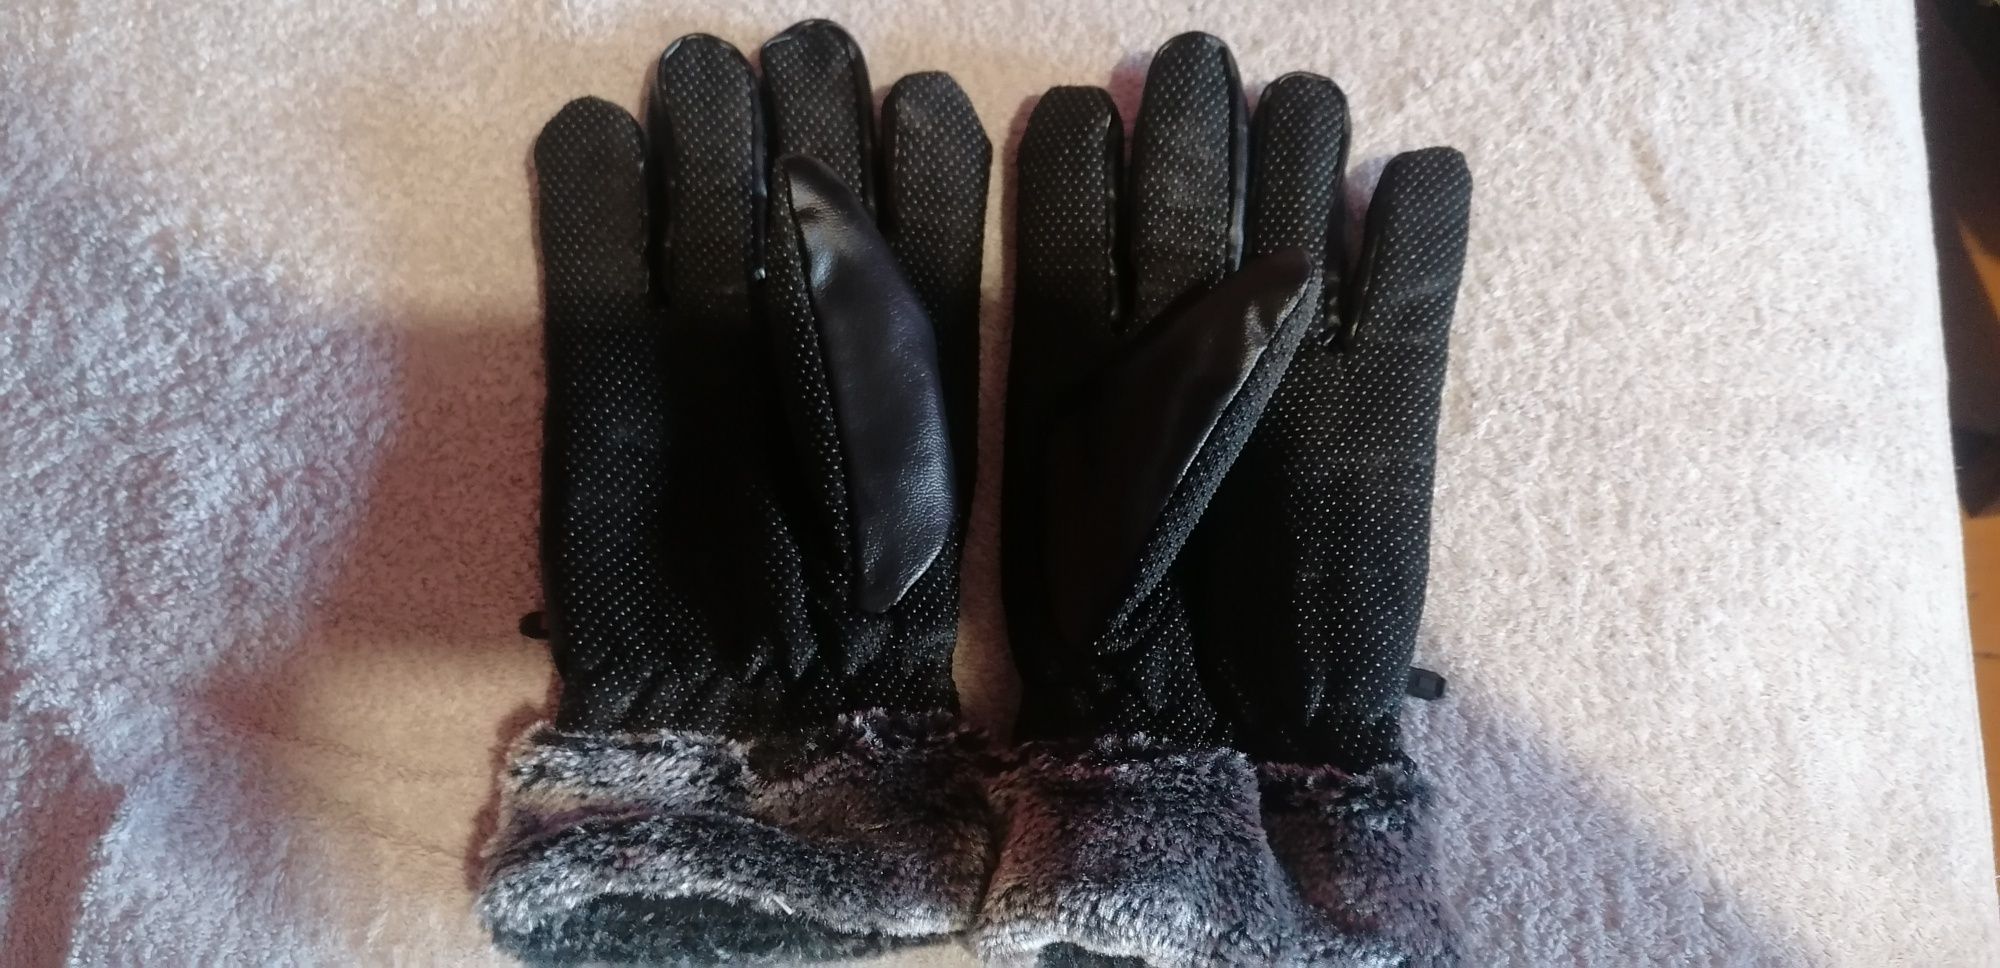 Rękawiczki męskie zimowe